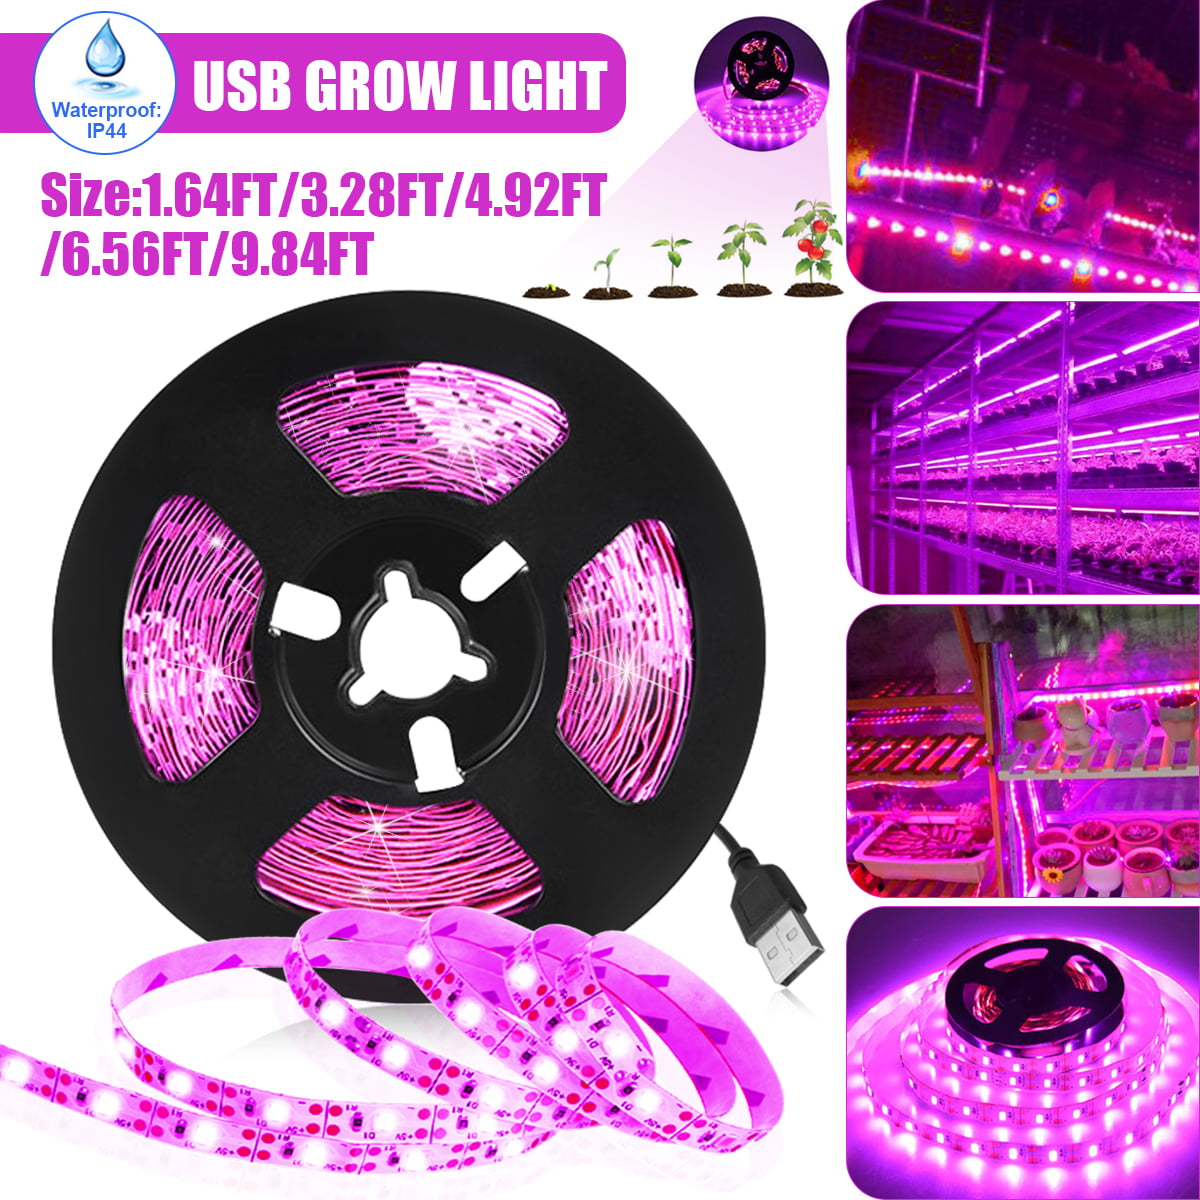 USB SMD 5050 LED Strip Grow Light Lamp Full Spectrum For Plant Veg DC 5V 4:1 